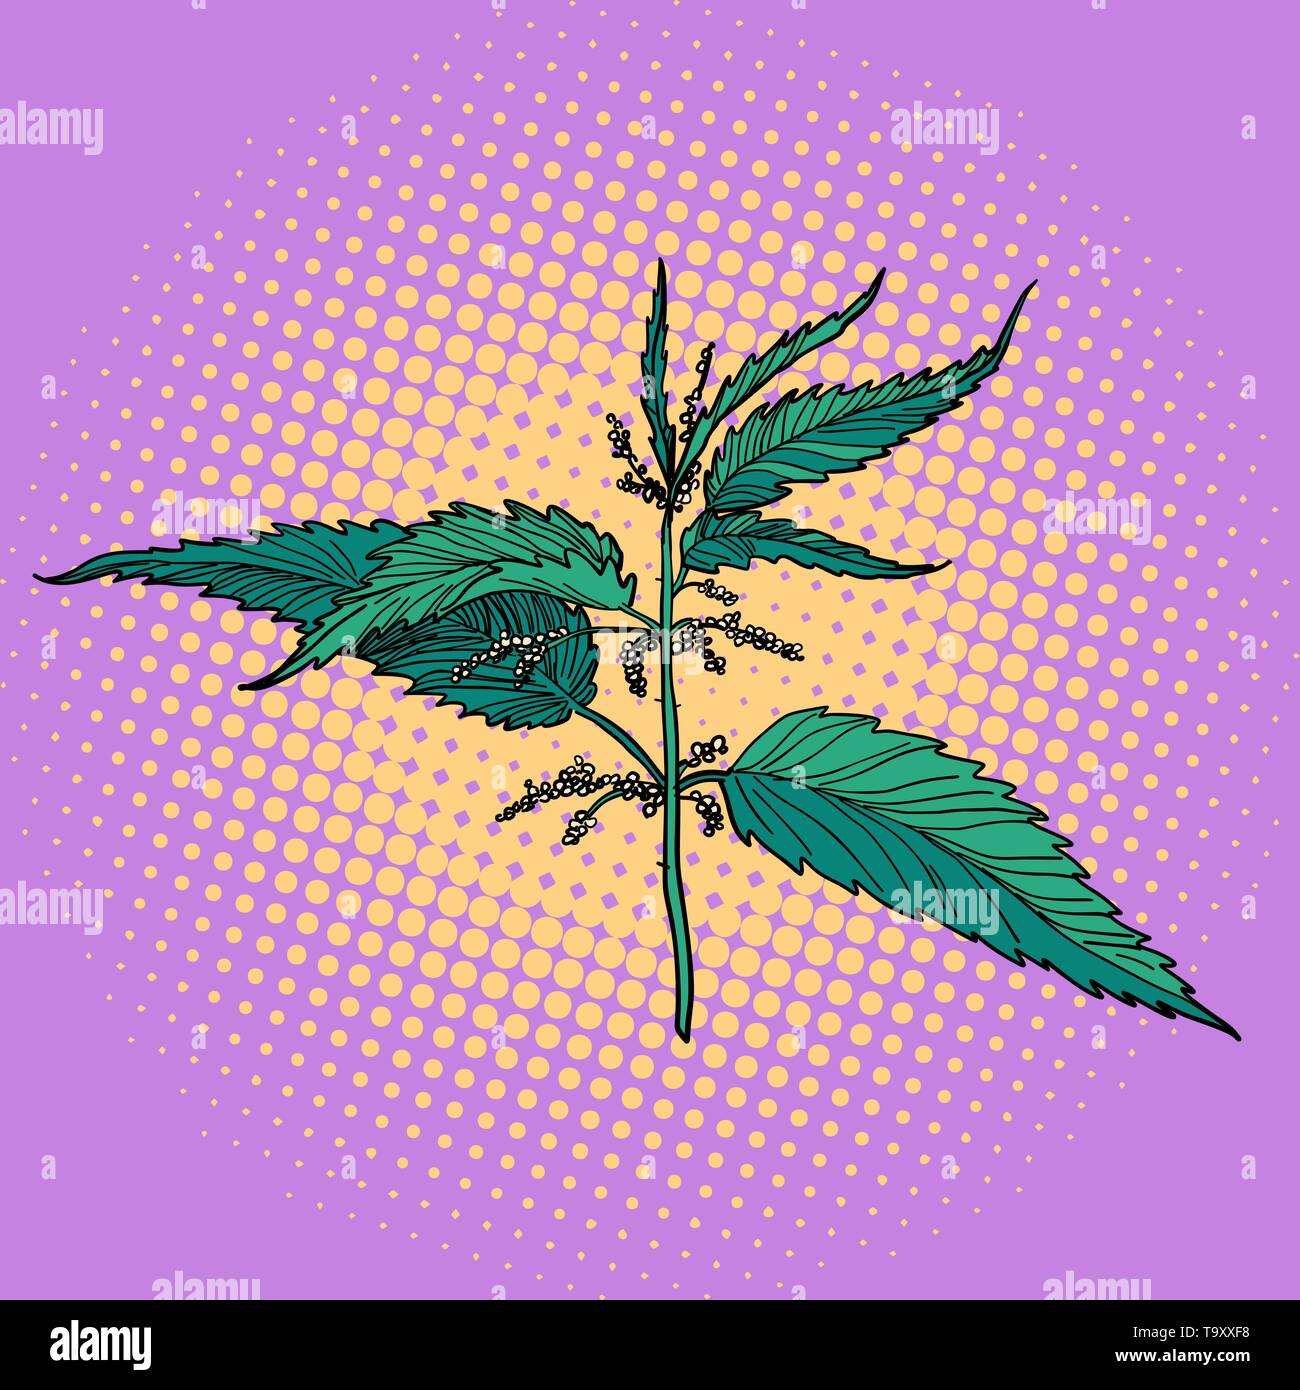 nettle, green burning plant. Pop art retro vector illustration vintage  kitsch Stock Vector Image & Art - Alamy